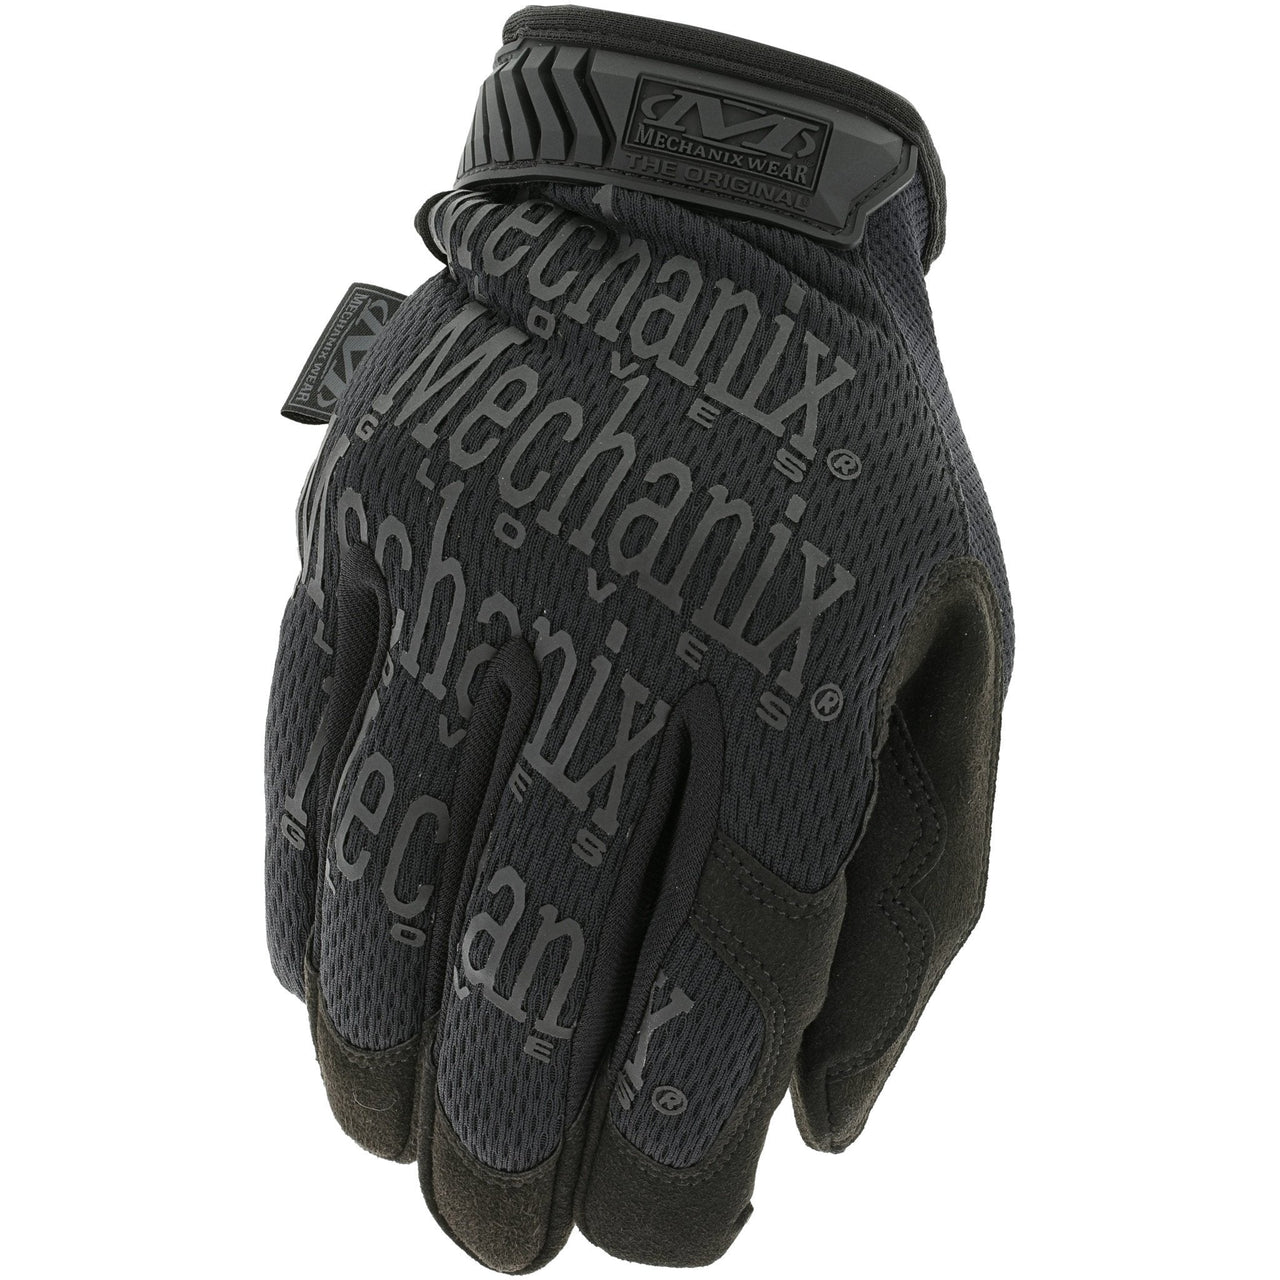 Mechanix Wear The Original Tactical Glove Covert